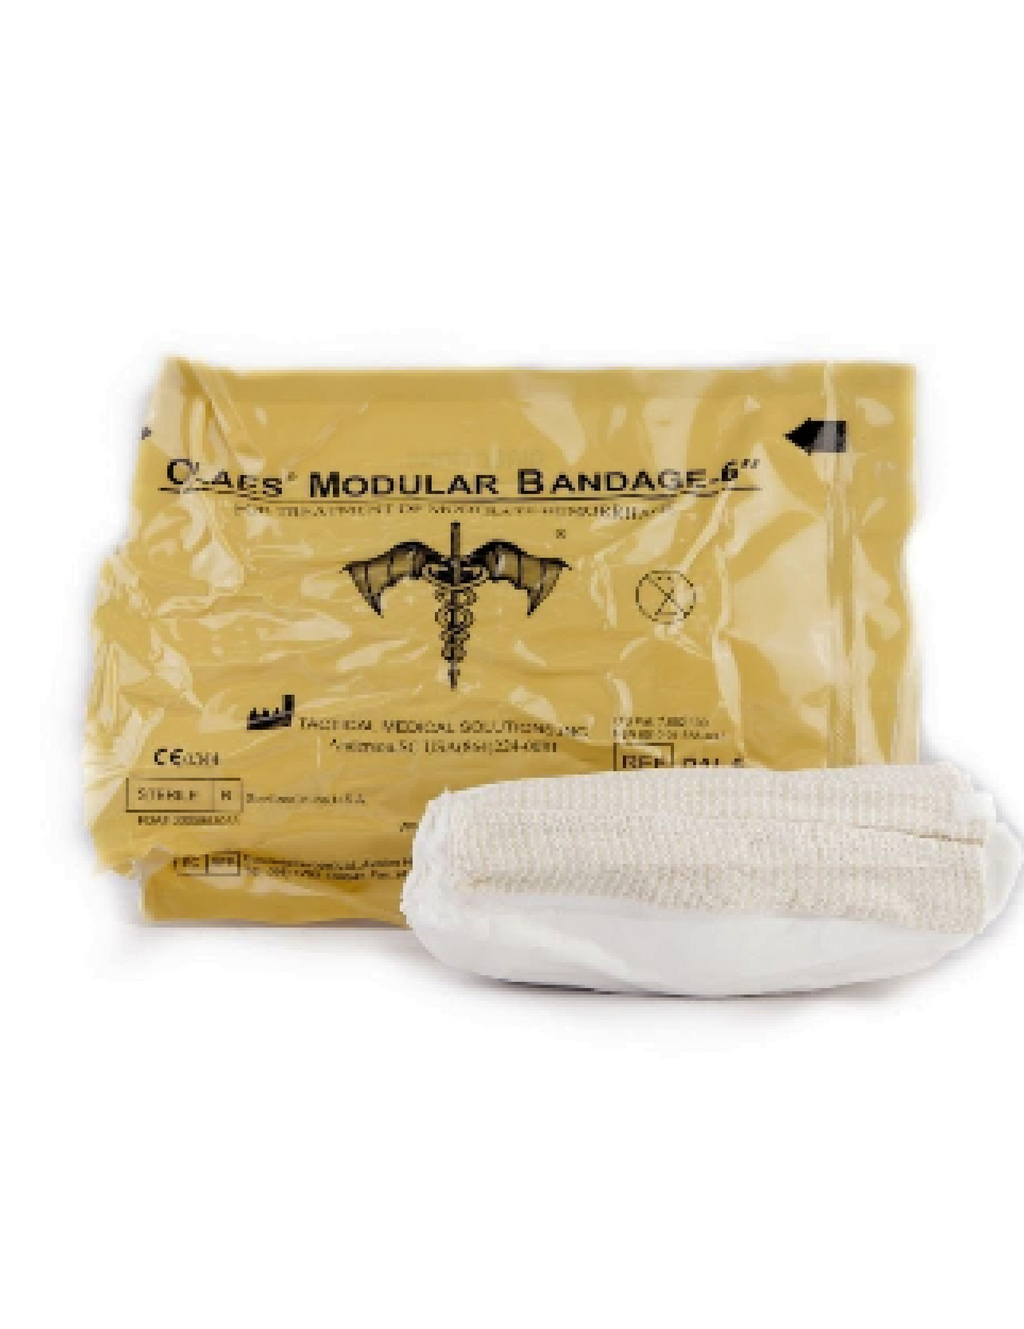 TacMed OLAES 6 " Modular Bandage